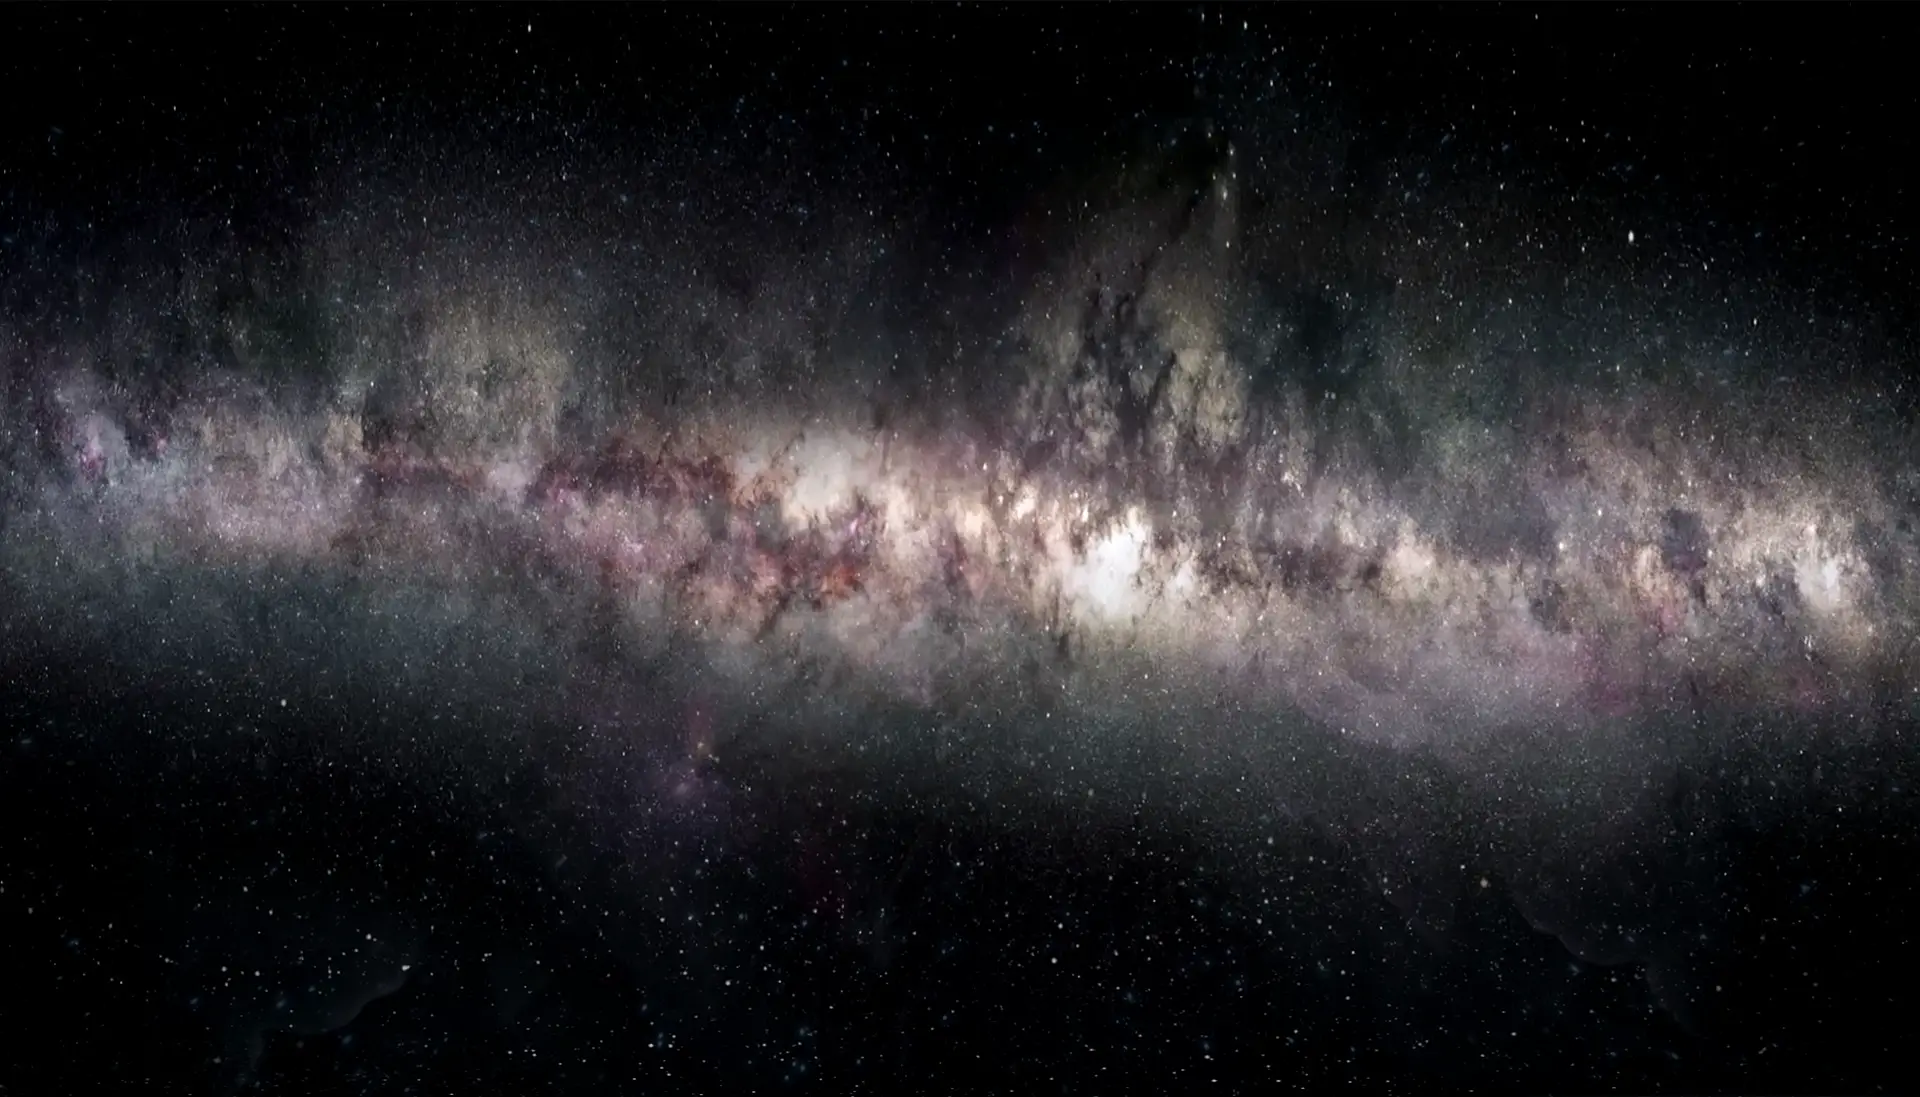 ¿Por qué nuestra galaxia se llama Vía Láctea? -Revista Interesante